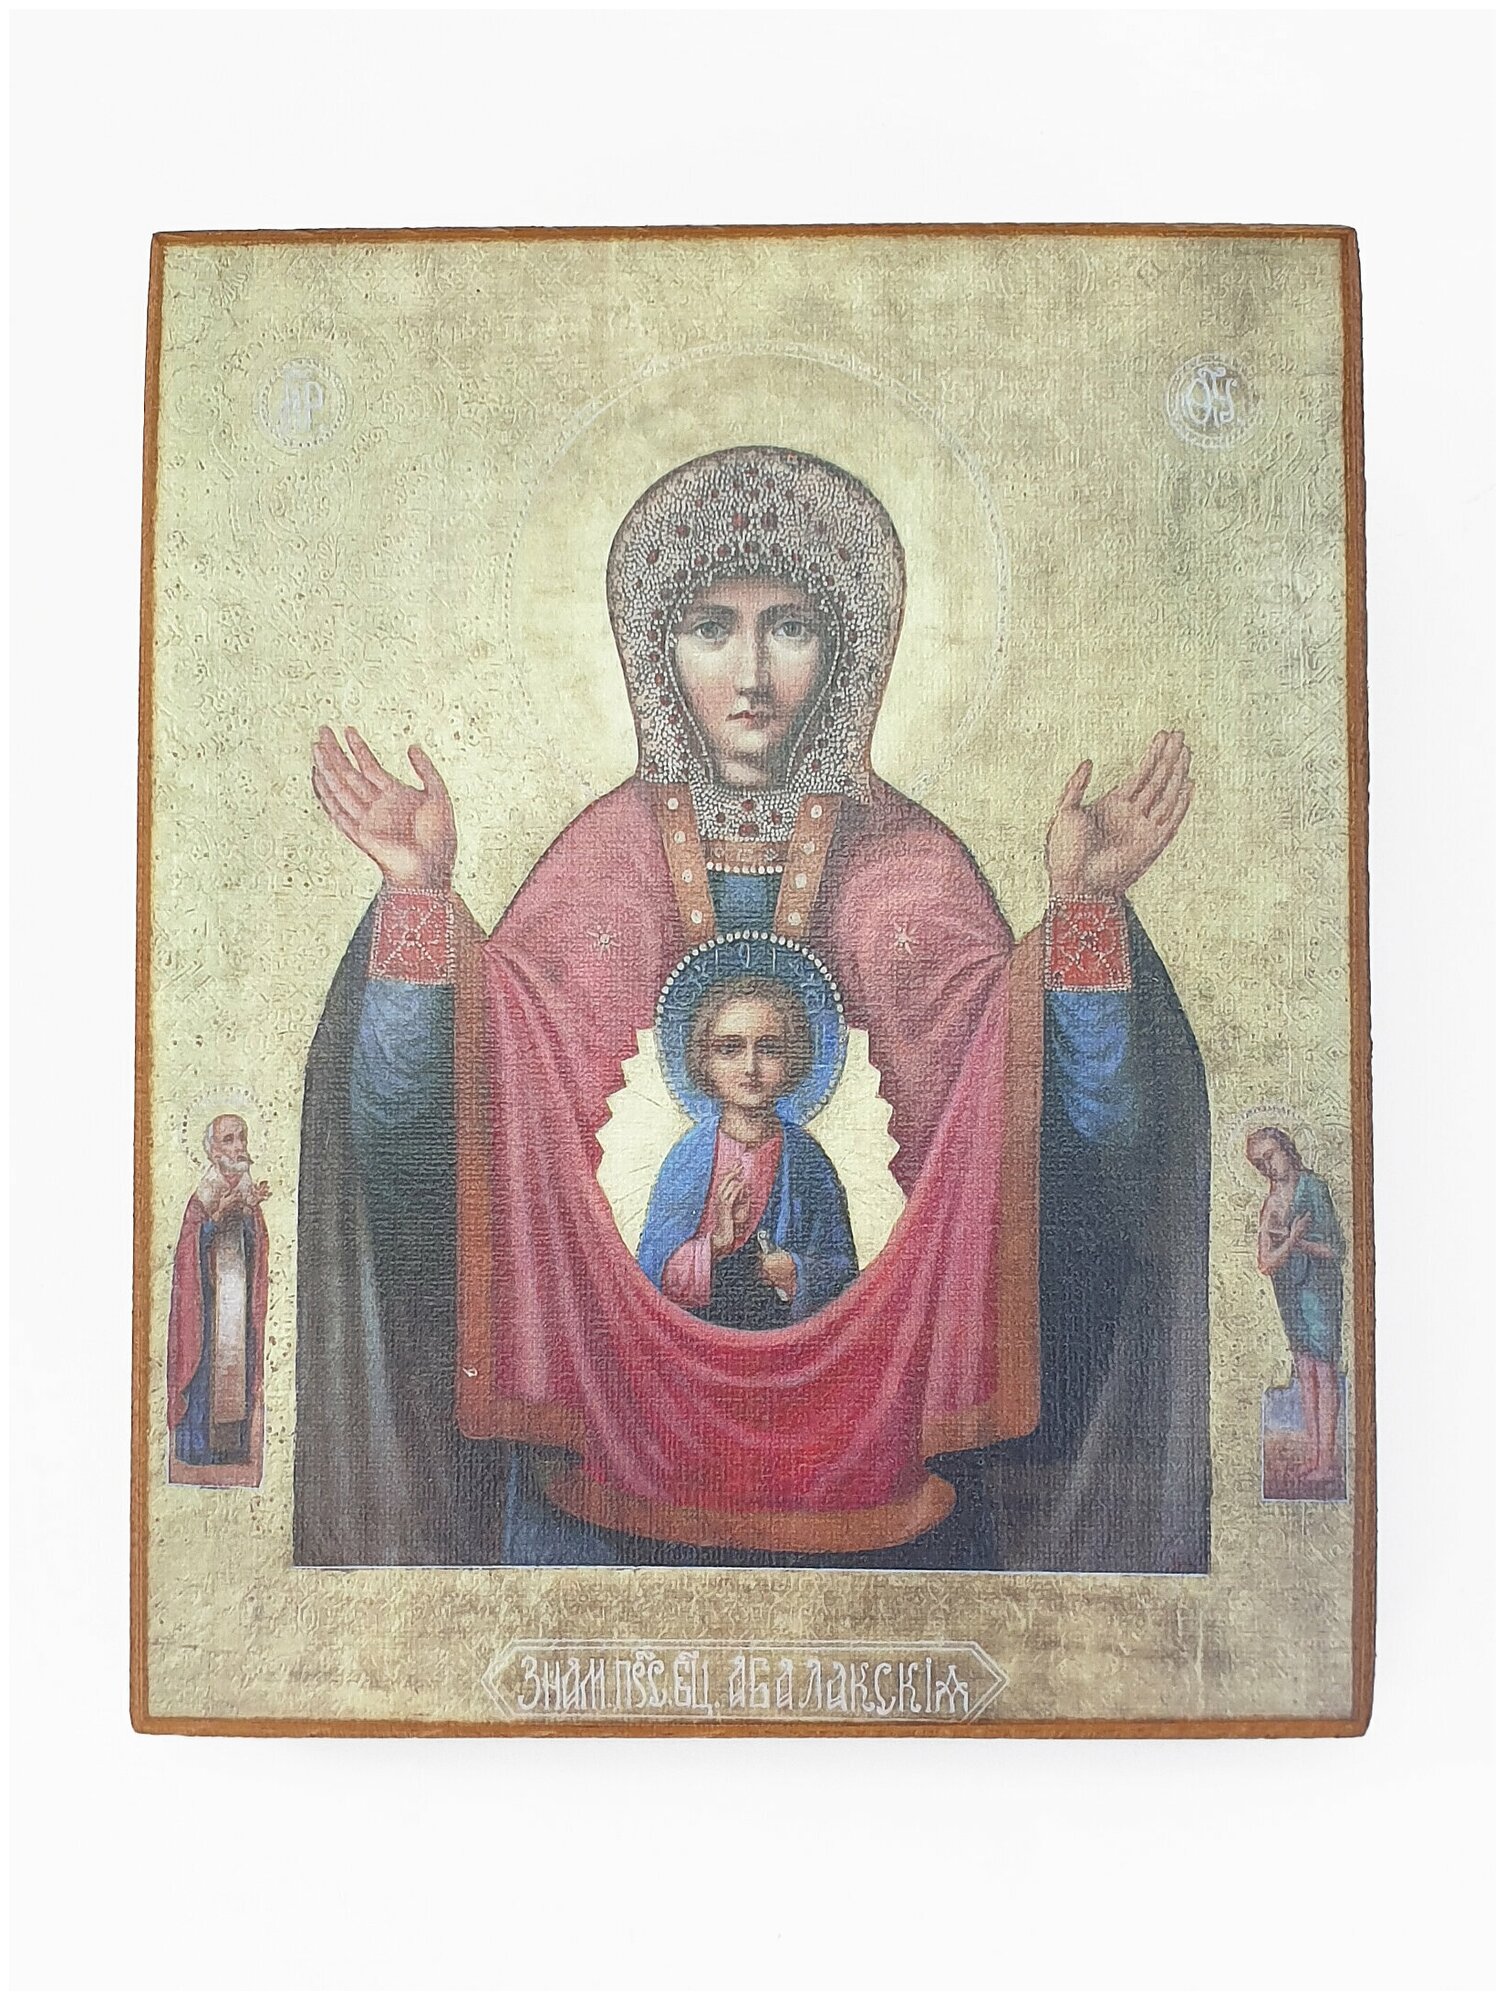 Икона "Богородица. Знамение", размер иконы - 10x13